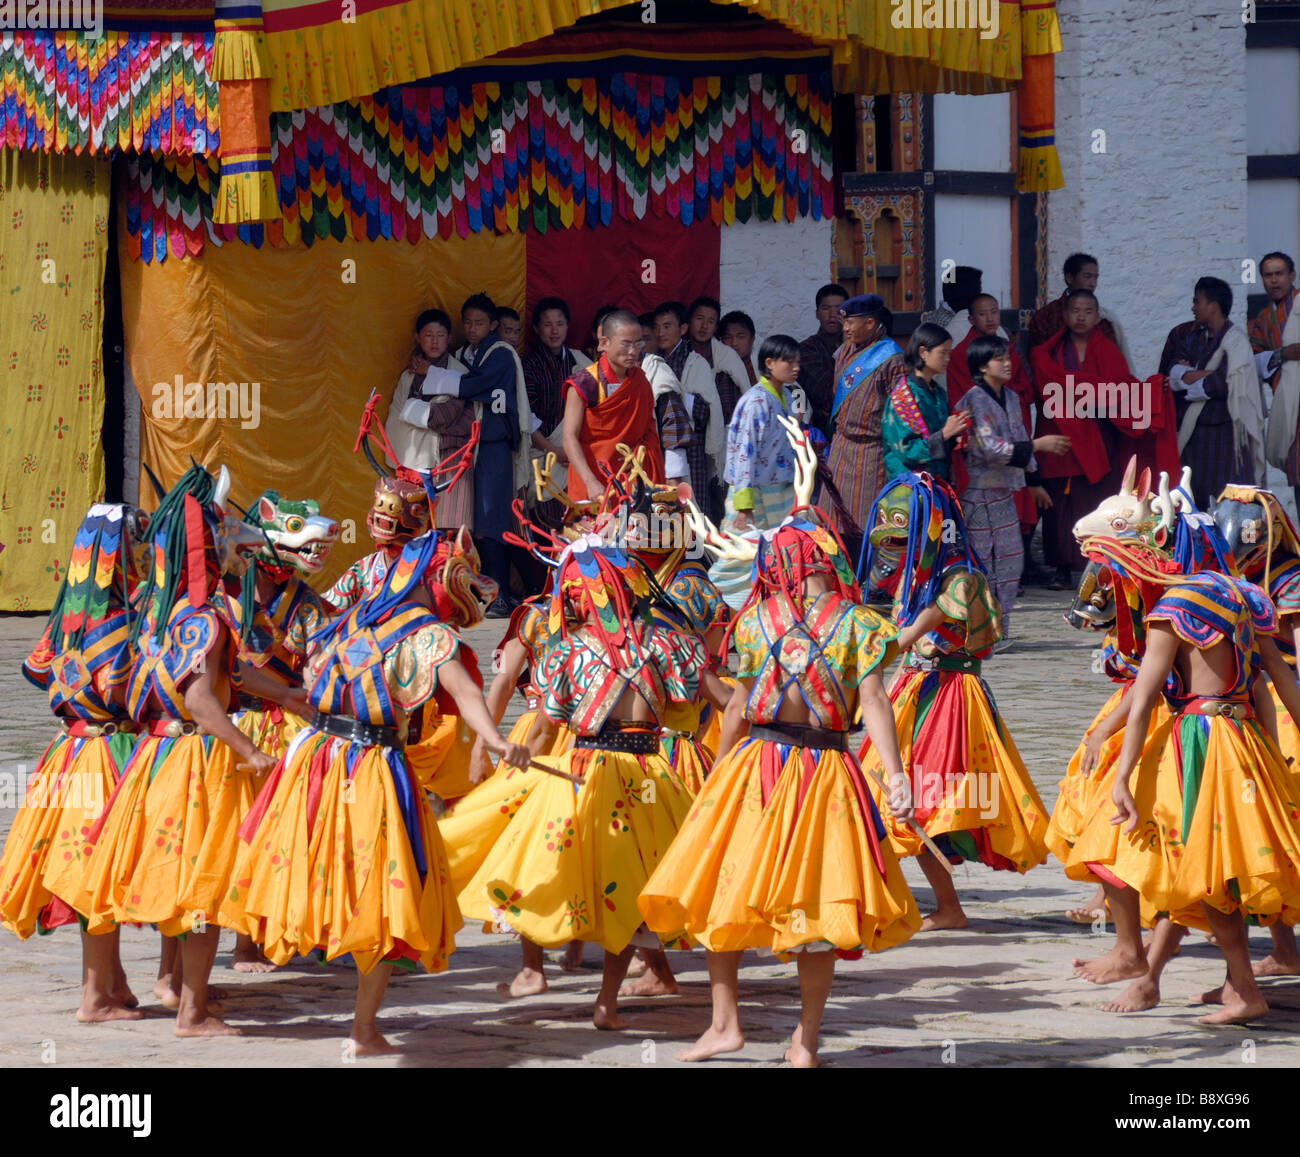 Danseurs en robe de couleur vive et peint masques d'animaux adopter une fable morale dans la cour du Dzong Mongar Bhutan Banque D'Images